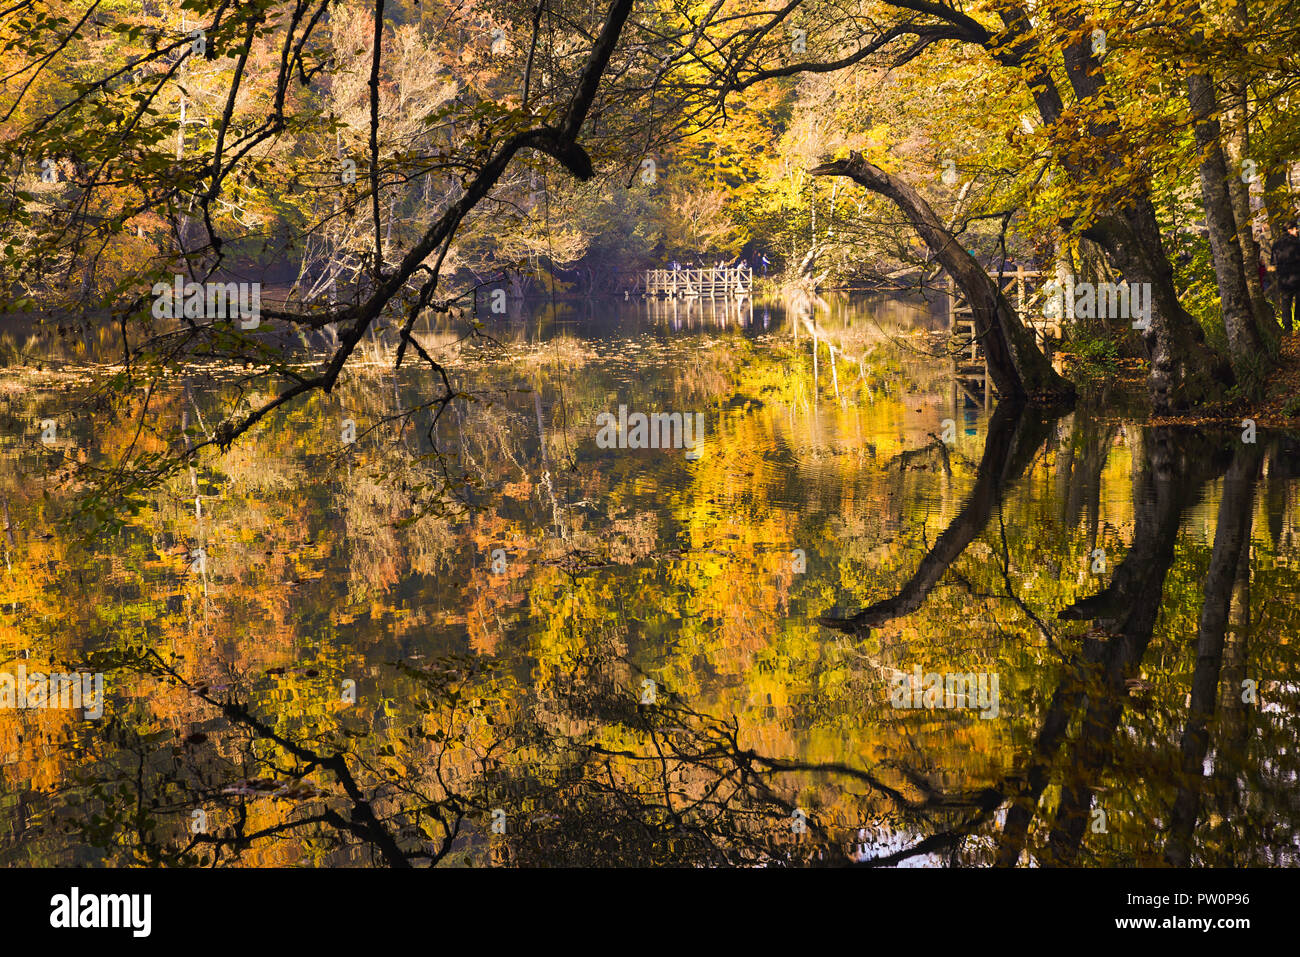 Herbst Bäume an einem See Rand Yedigoller National Park, Türkei. Es gibt schöne Spiegelungen der Bäume auf dem Wasser. Stockfoto